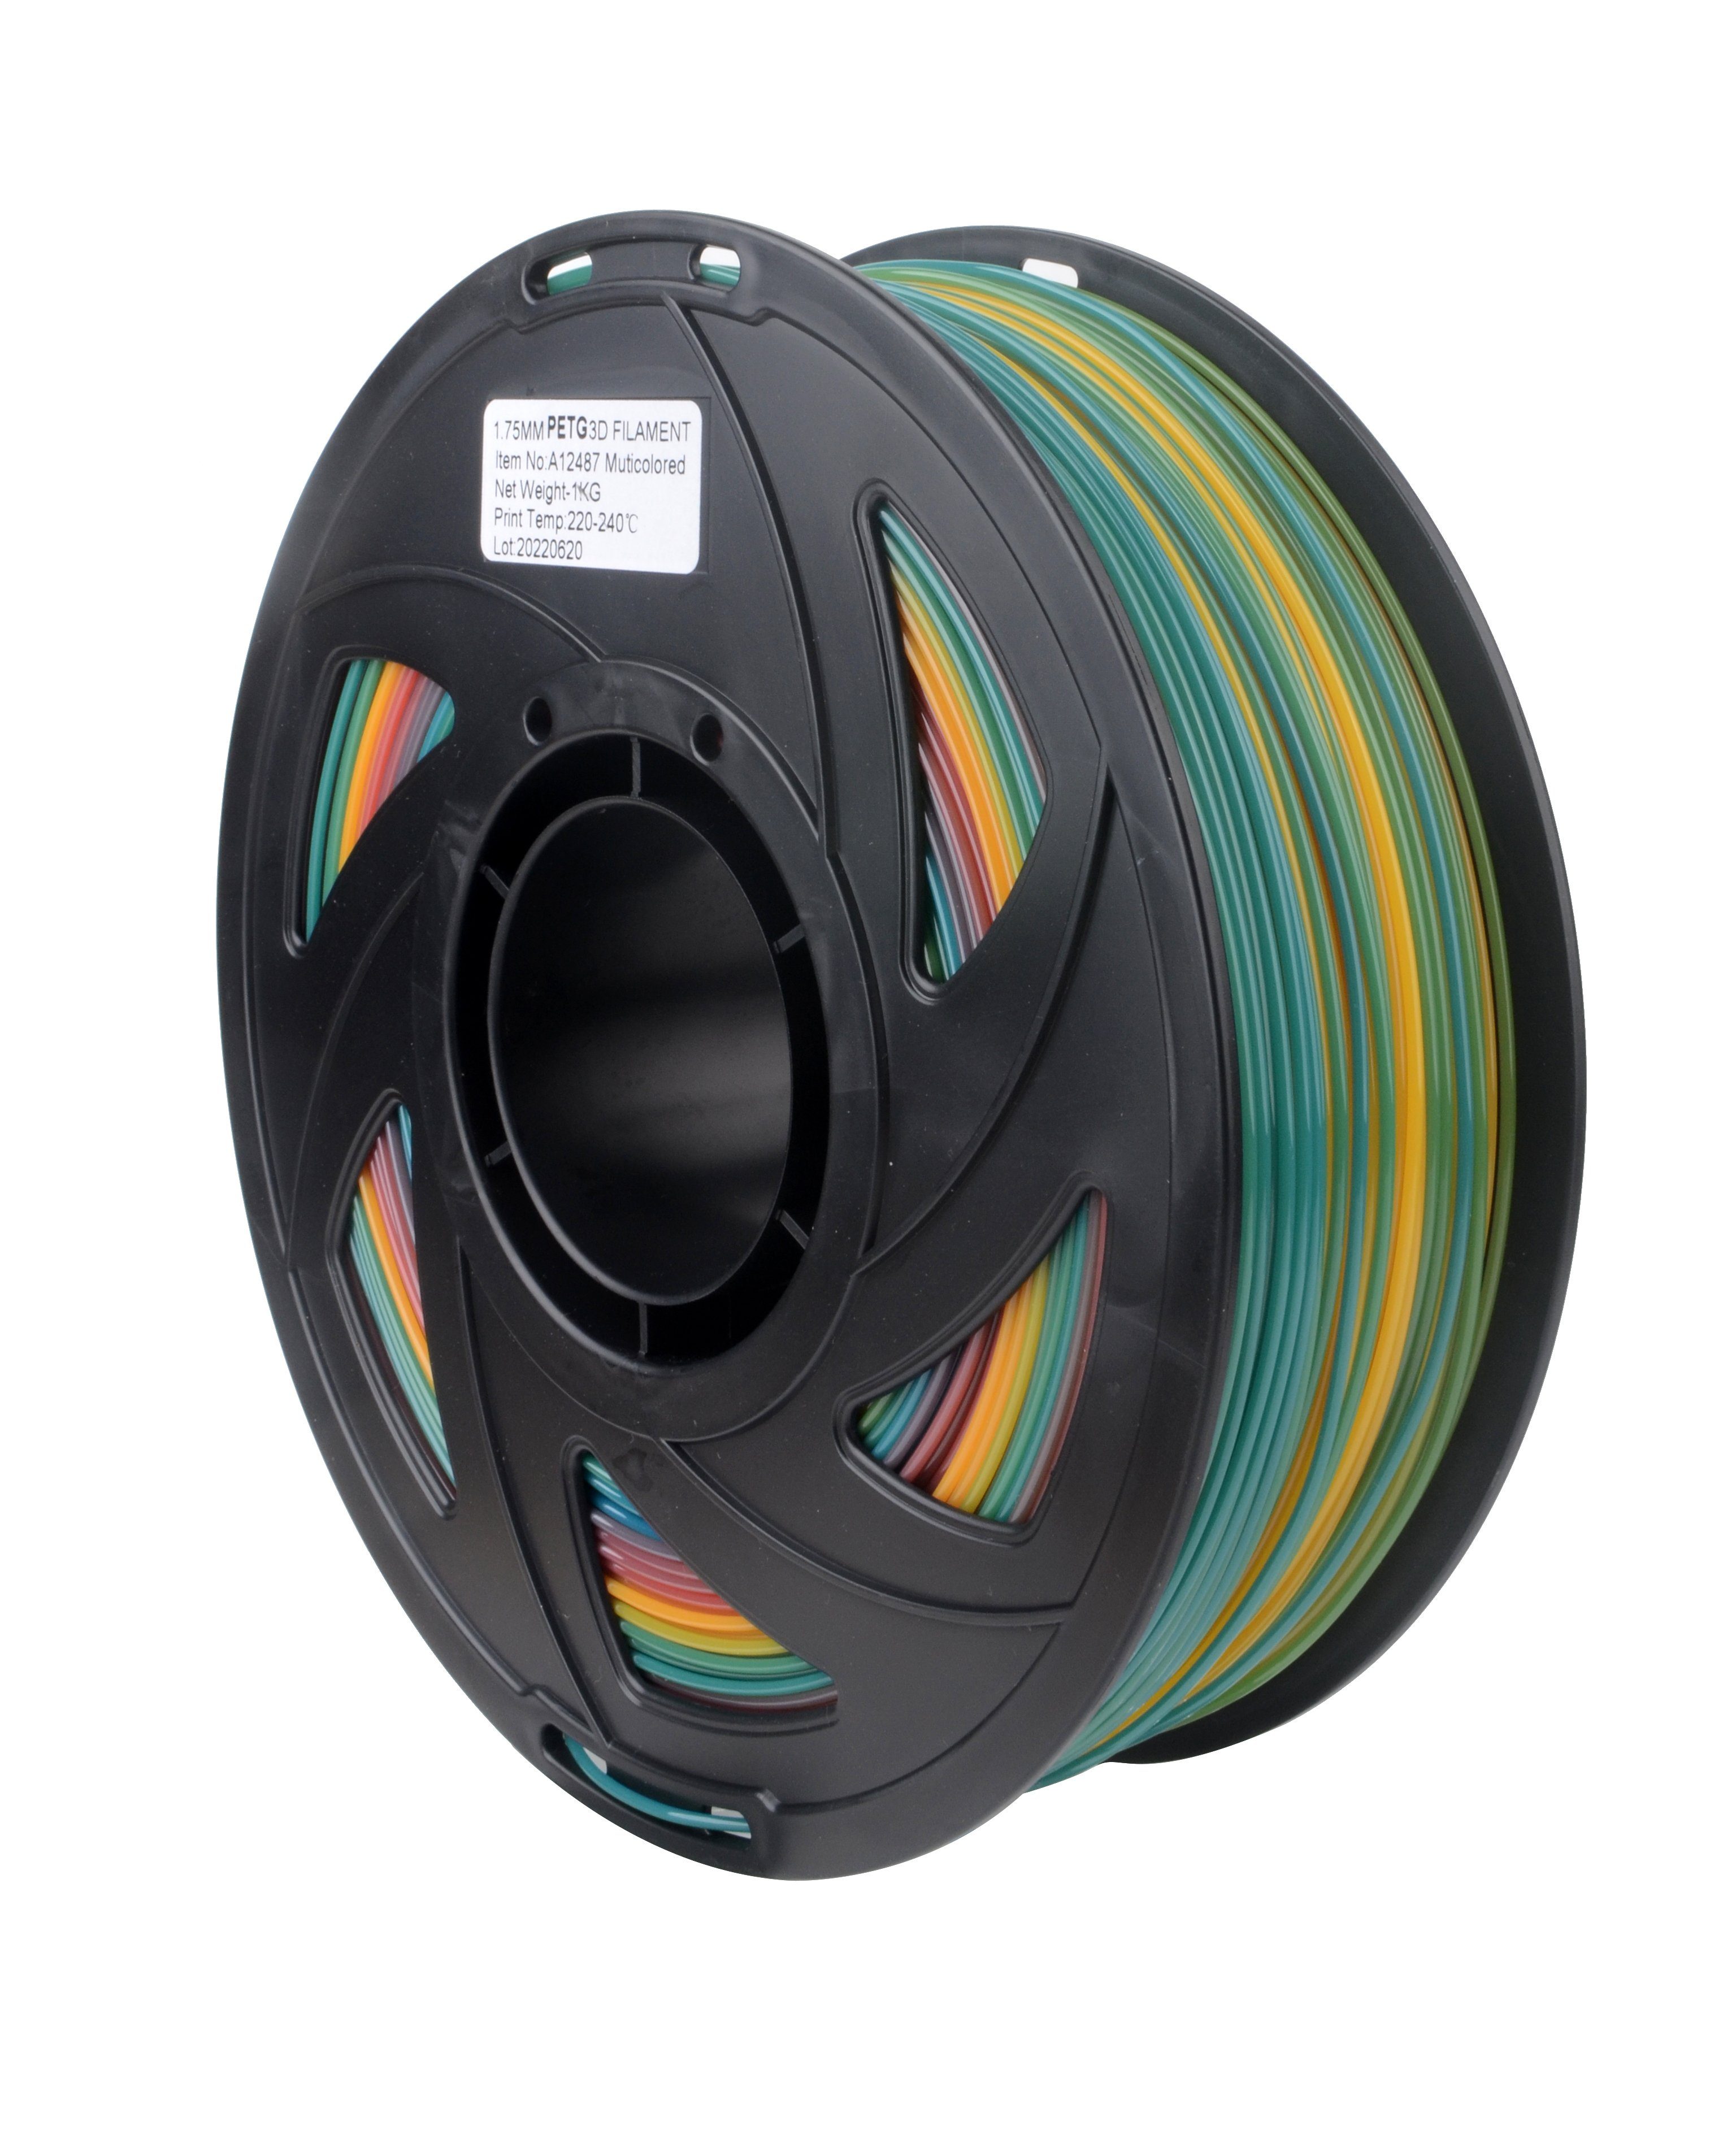 Filament 1KG PETG Mehrfarbig Filament Farben euroharry 1,75mm 3D verschiedene